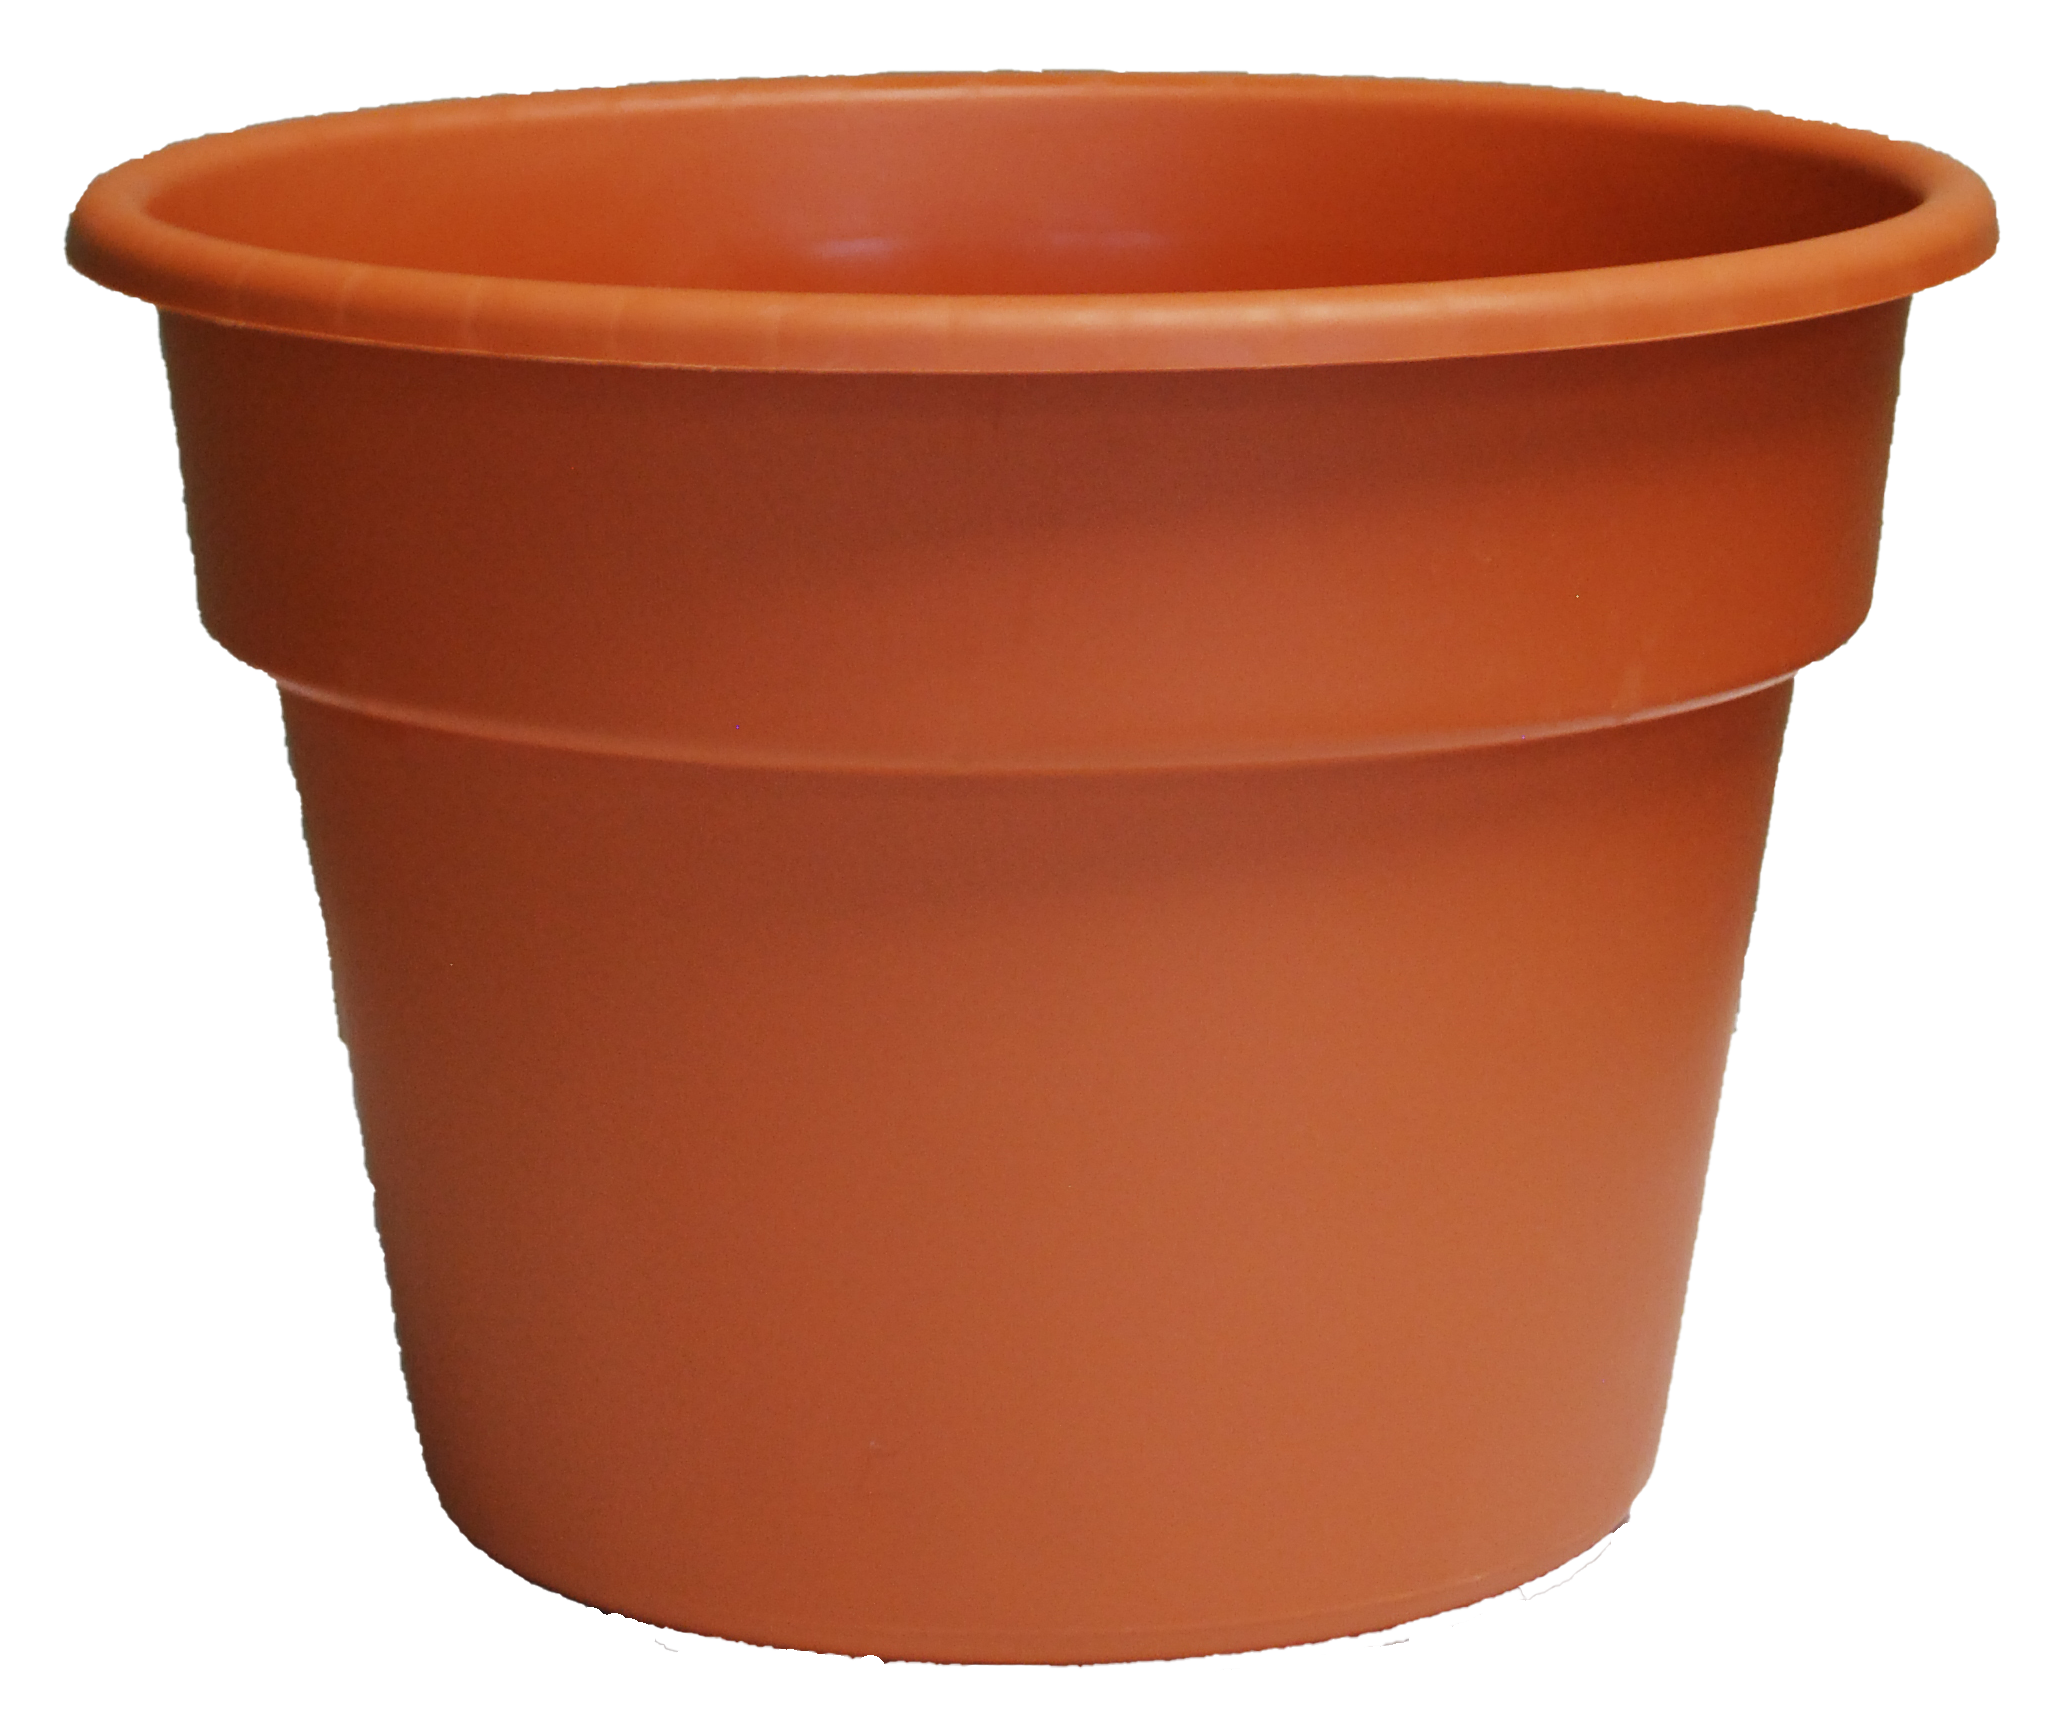 8.0 Patio Pot Clay – 150 per case - Decorative Planters